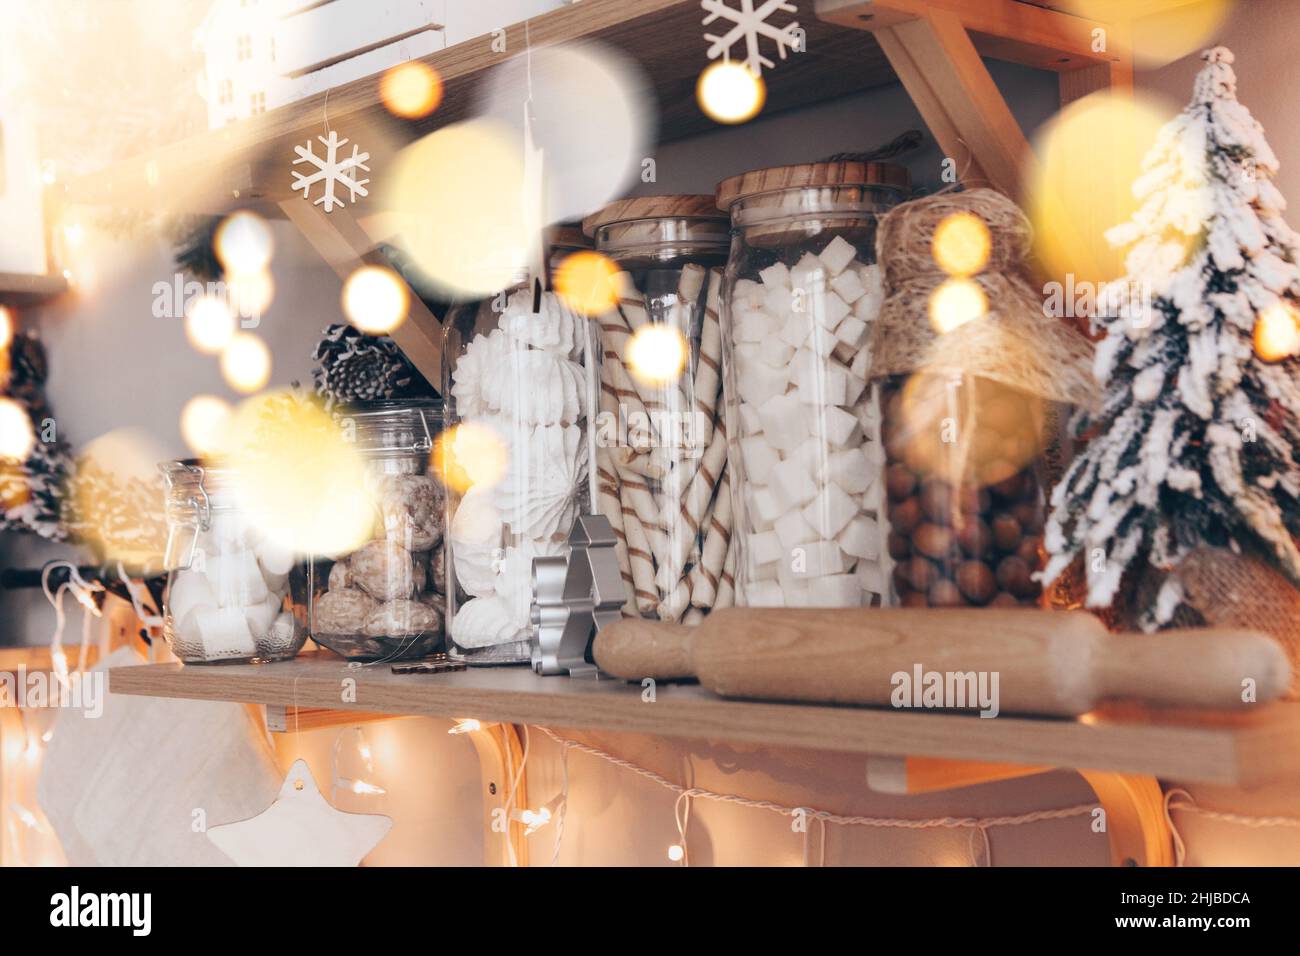 Comptoir de magasin de bonbons ou de café décoré de décorations de Noël pendant Noël, étagères en bois avec pots en verre remplis de bonbons disposés en rangée Banque D'Images